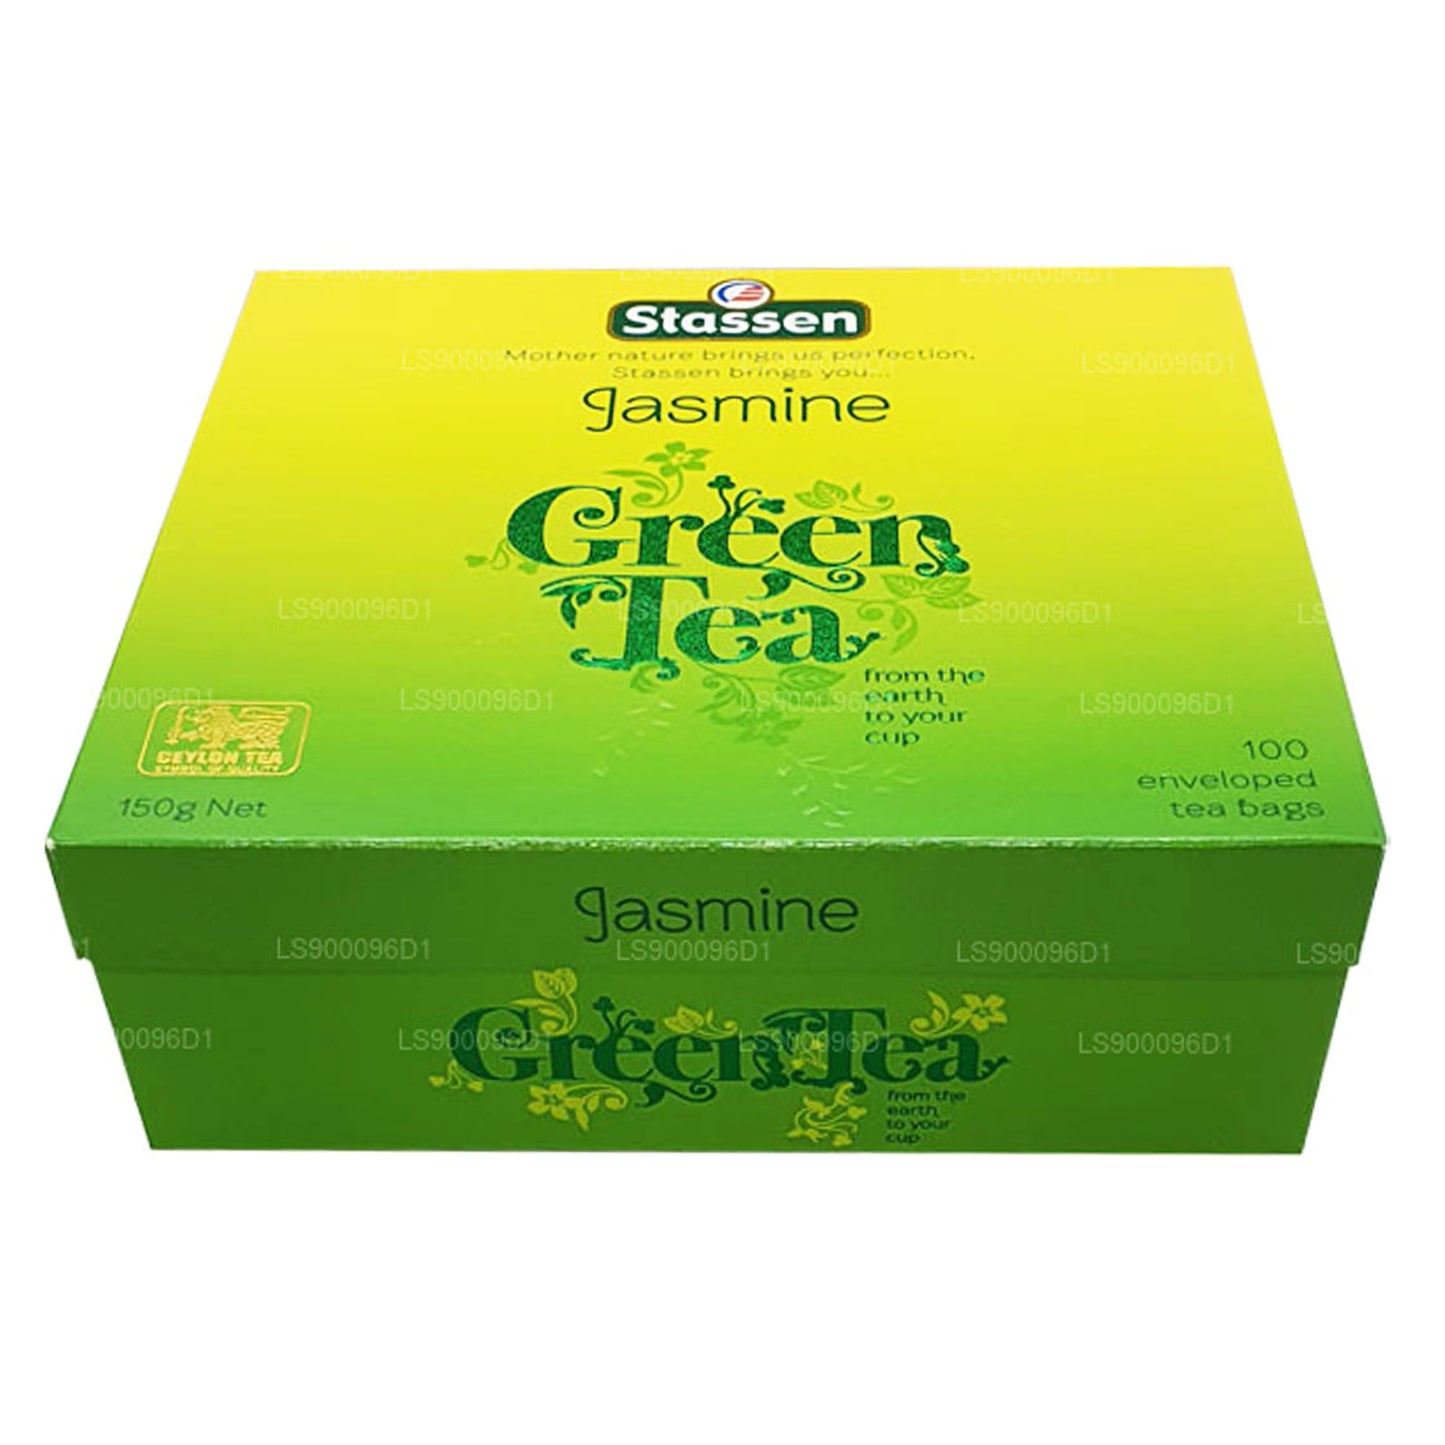 Зеленый чай Stassen с жасмином (150 г) 100 пакетиков